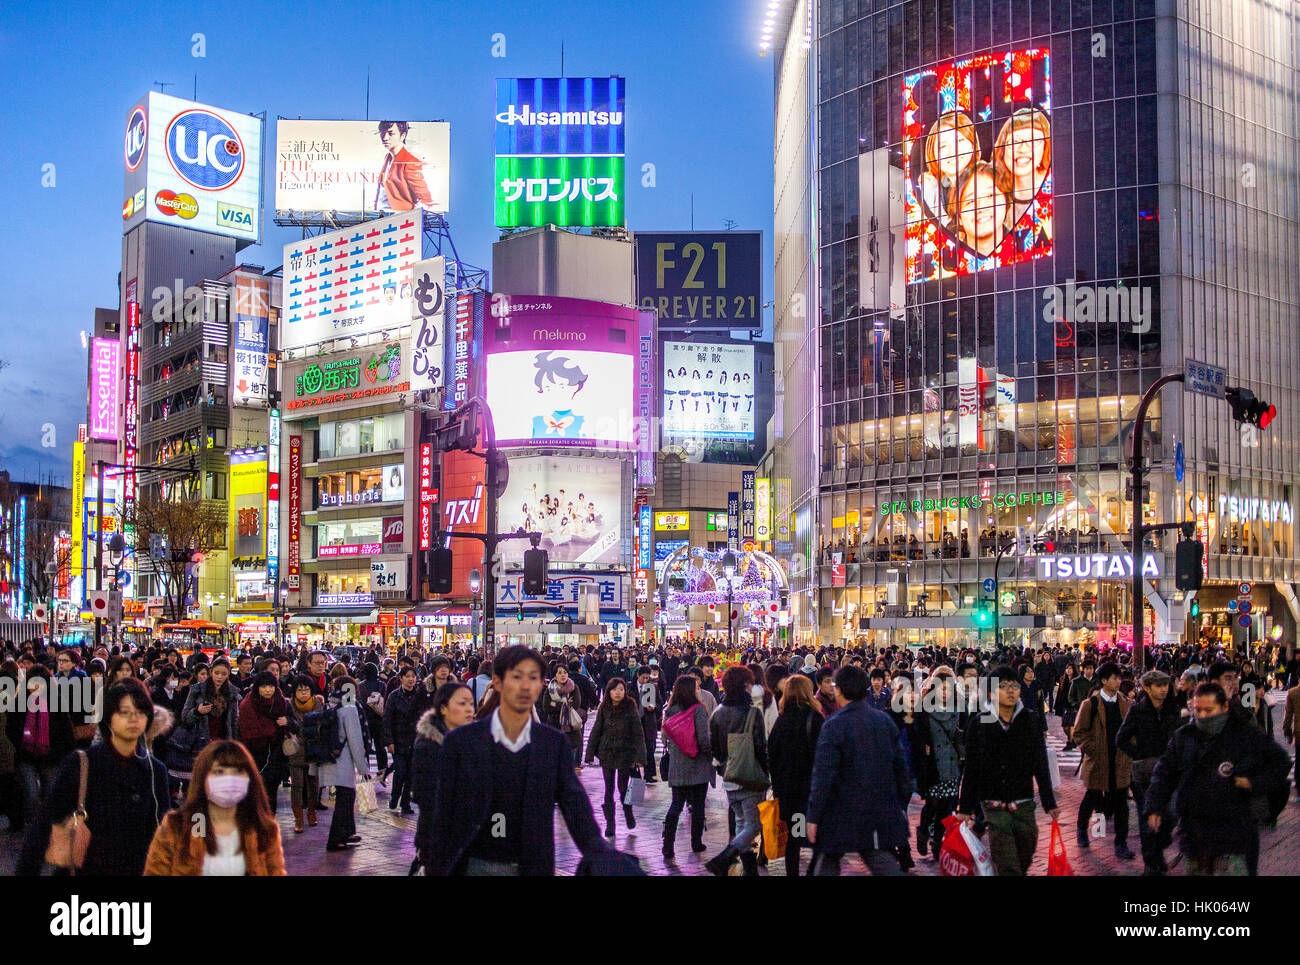 Stadtbild, jagt Kousaten Kreuzung in Hachiko Square, Shibuya, Tokio, Japan Stockfoto